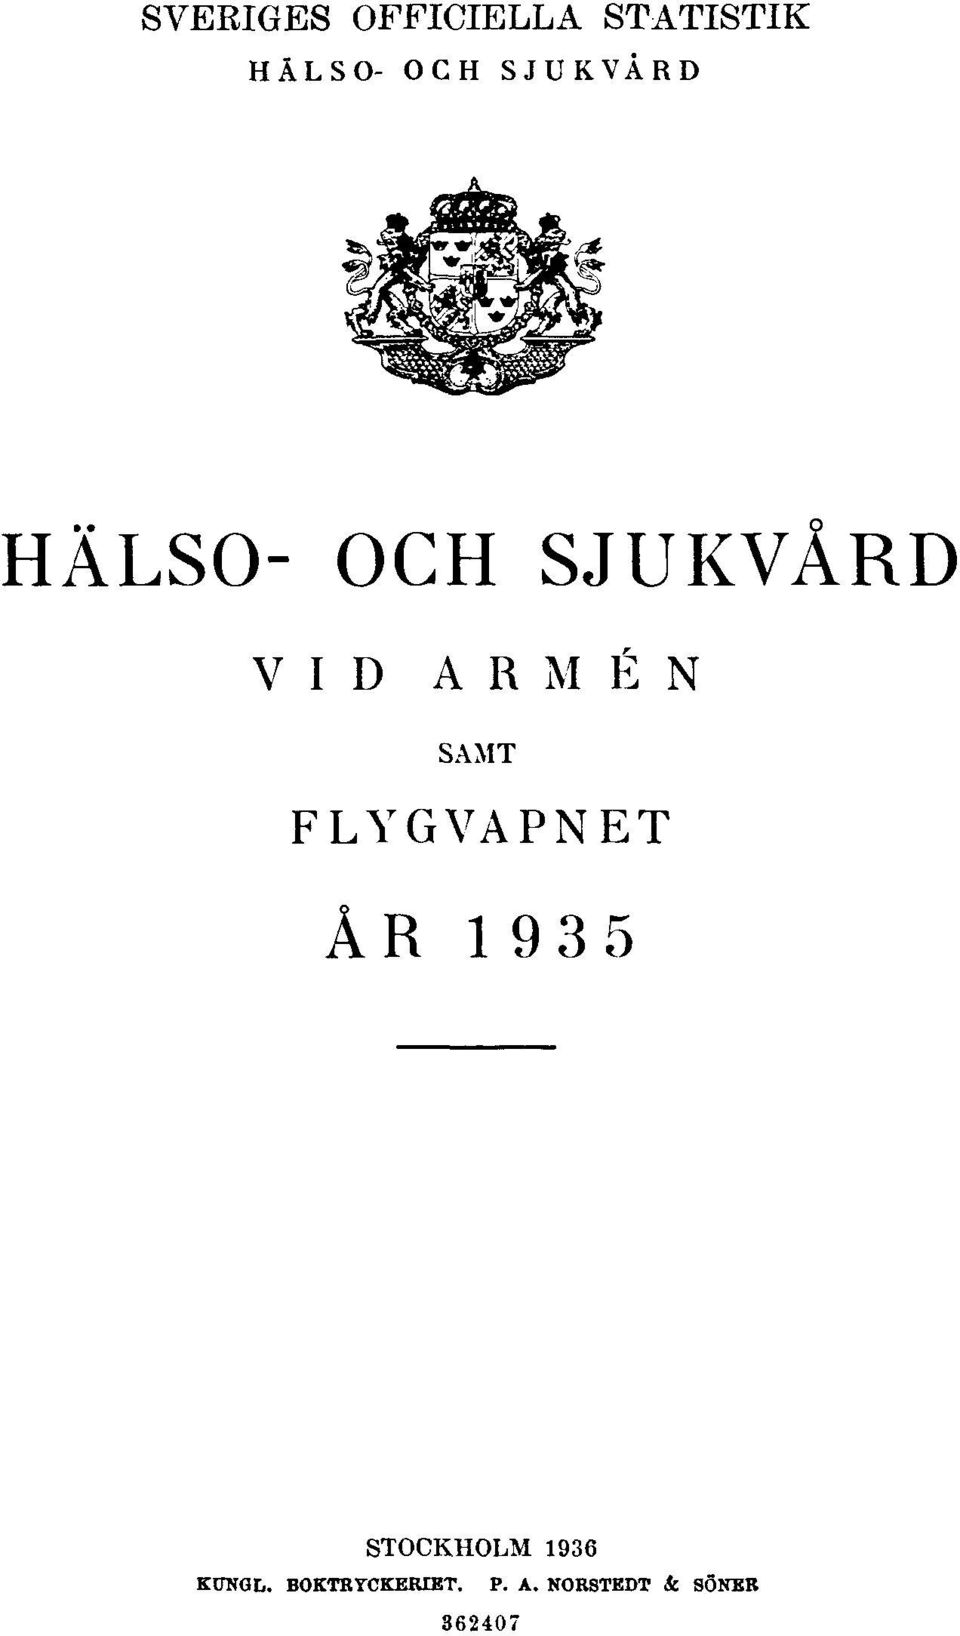 SAMT FLYGVAPNET ÅR 1935 STOCKHOLM 1936